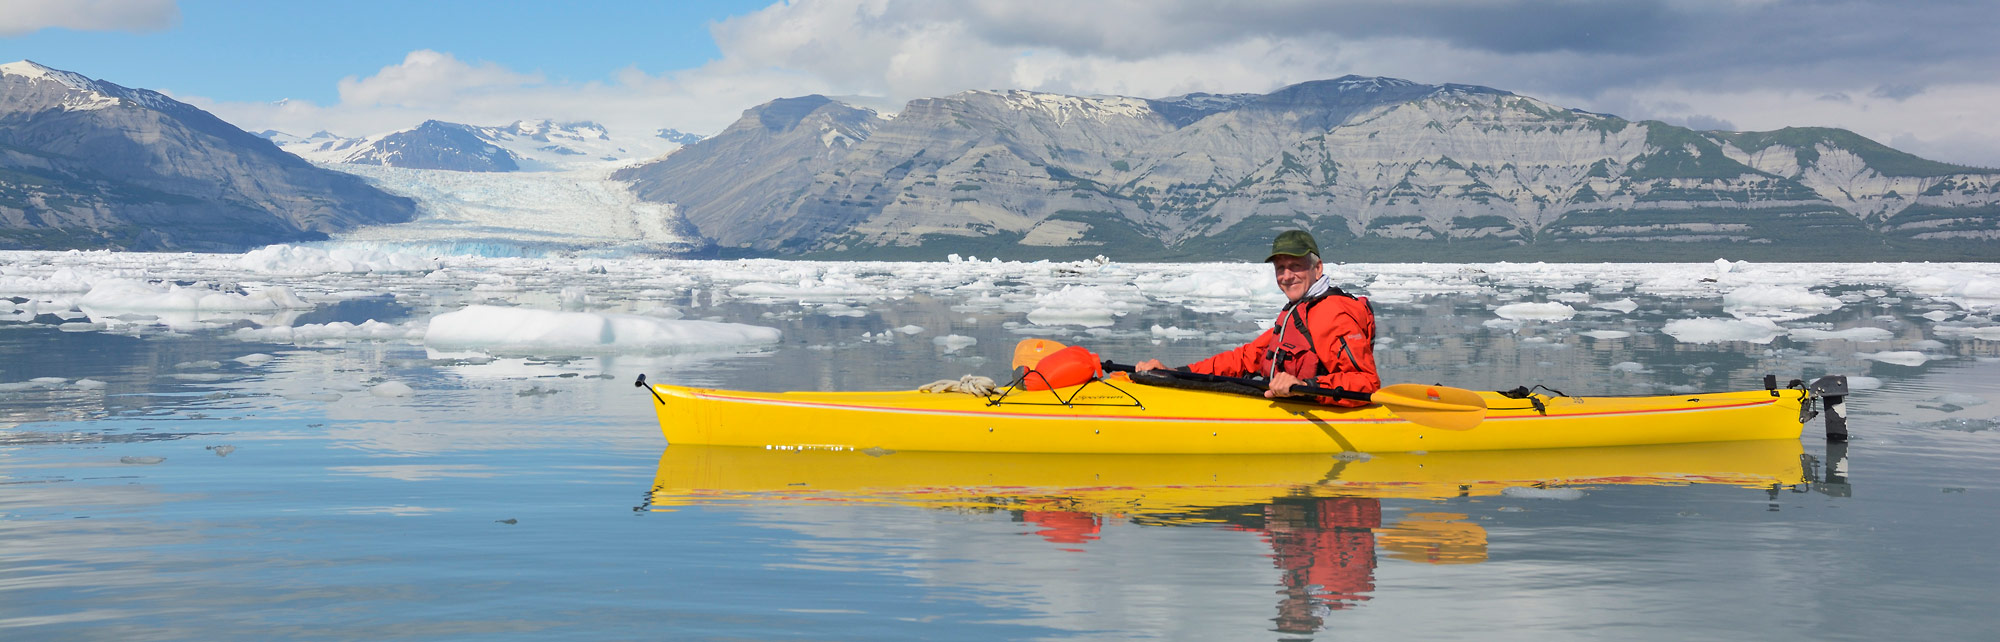 Sea kayaking trip Kayaking Icy Bay, Wrangell-St. Elias National Park, Alaska.